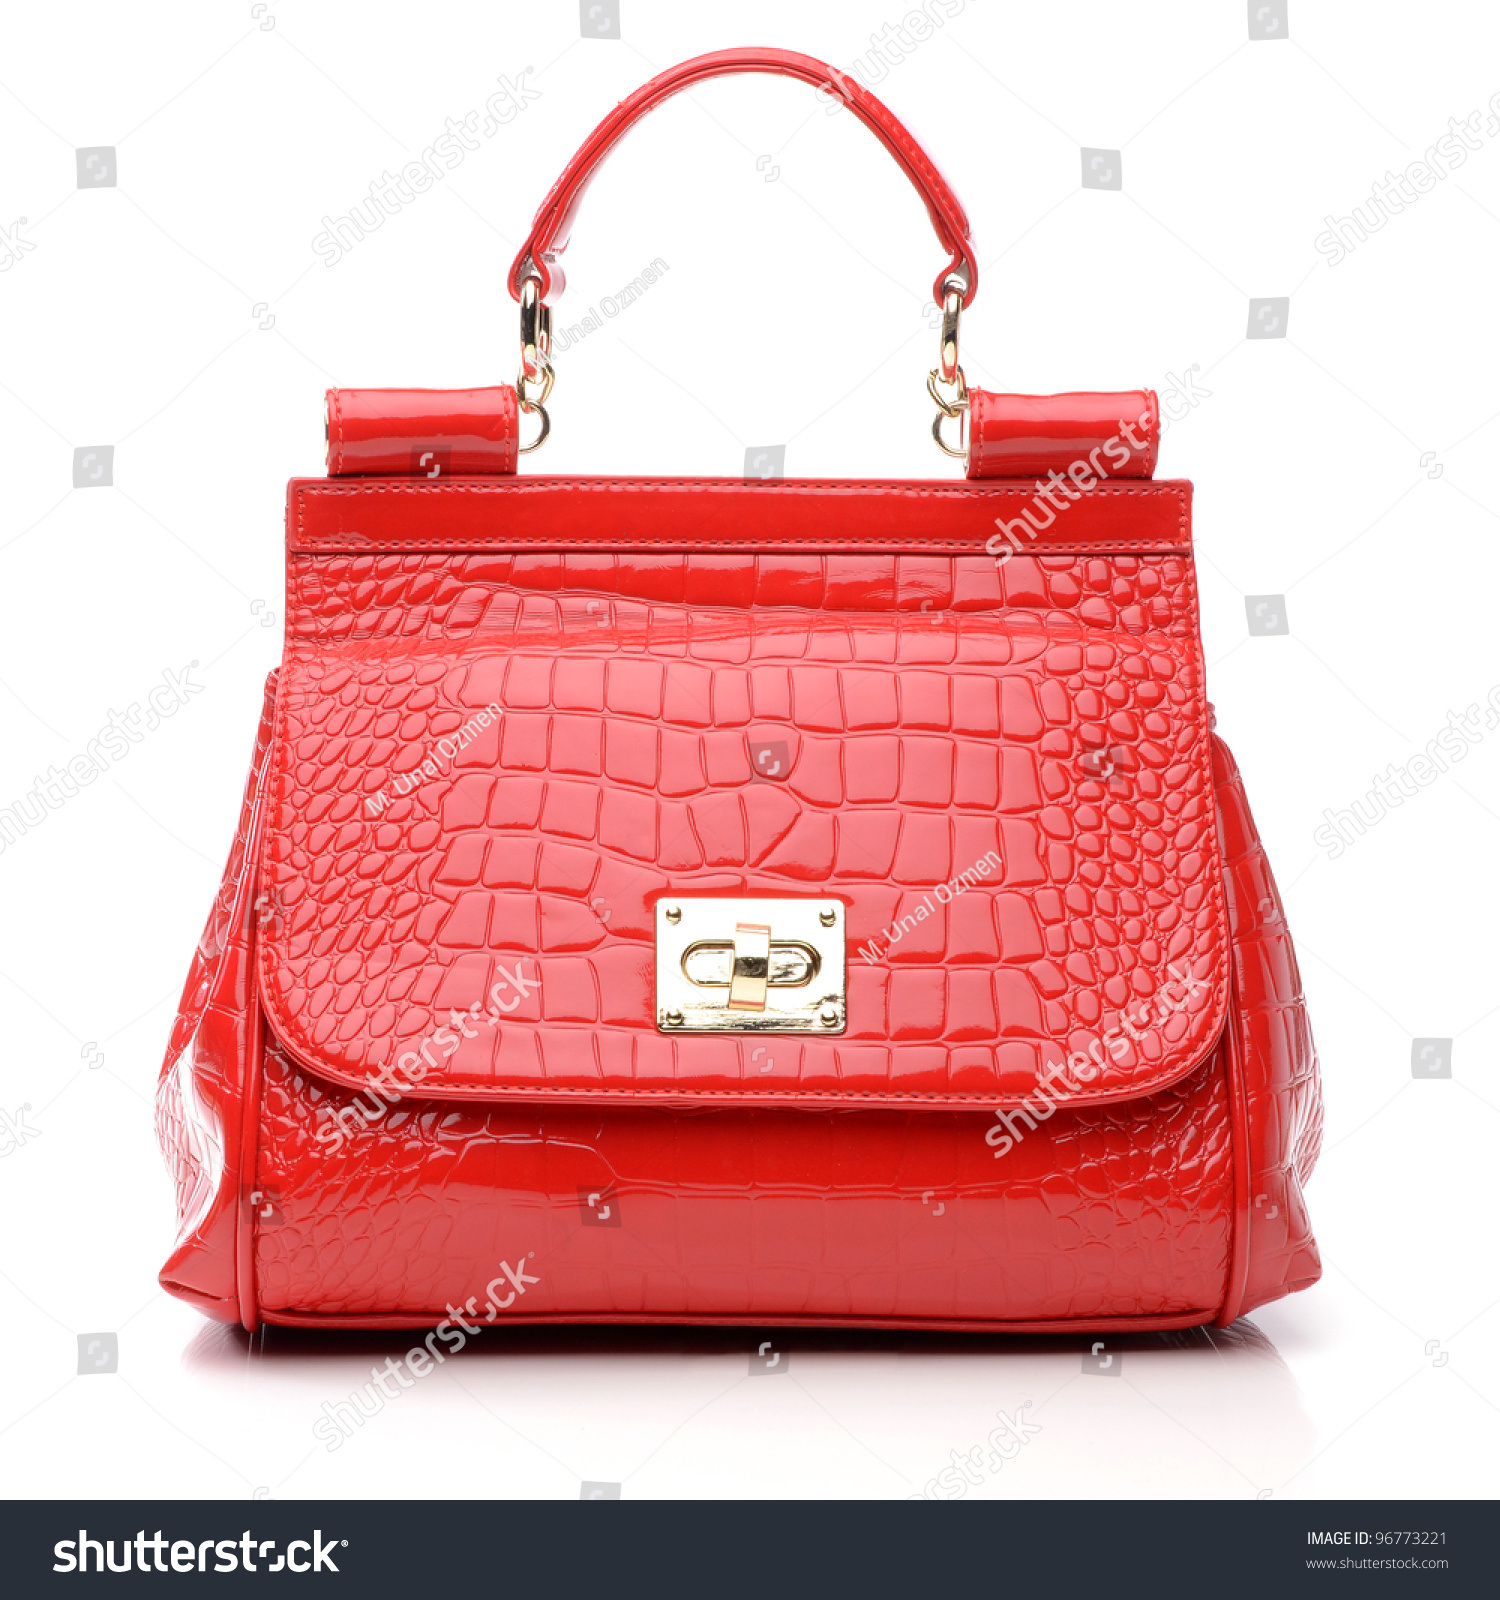 Women'S Handbag On White Background Stock Photo 96773221 : Shutterstock